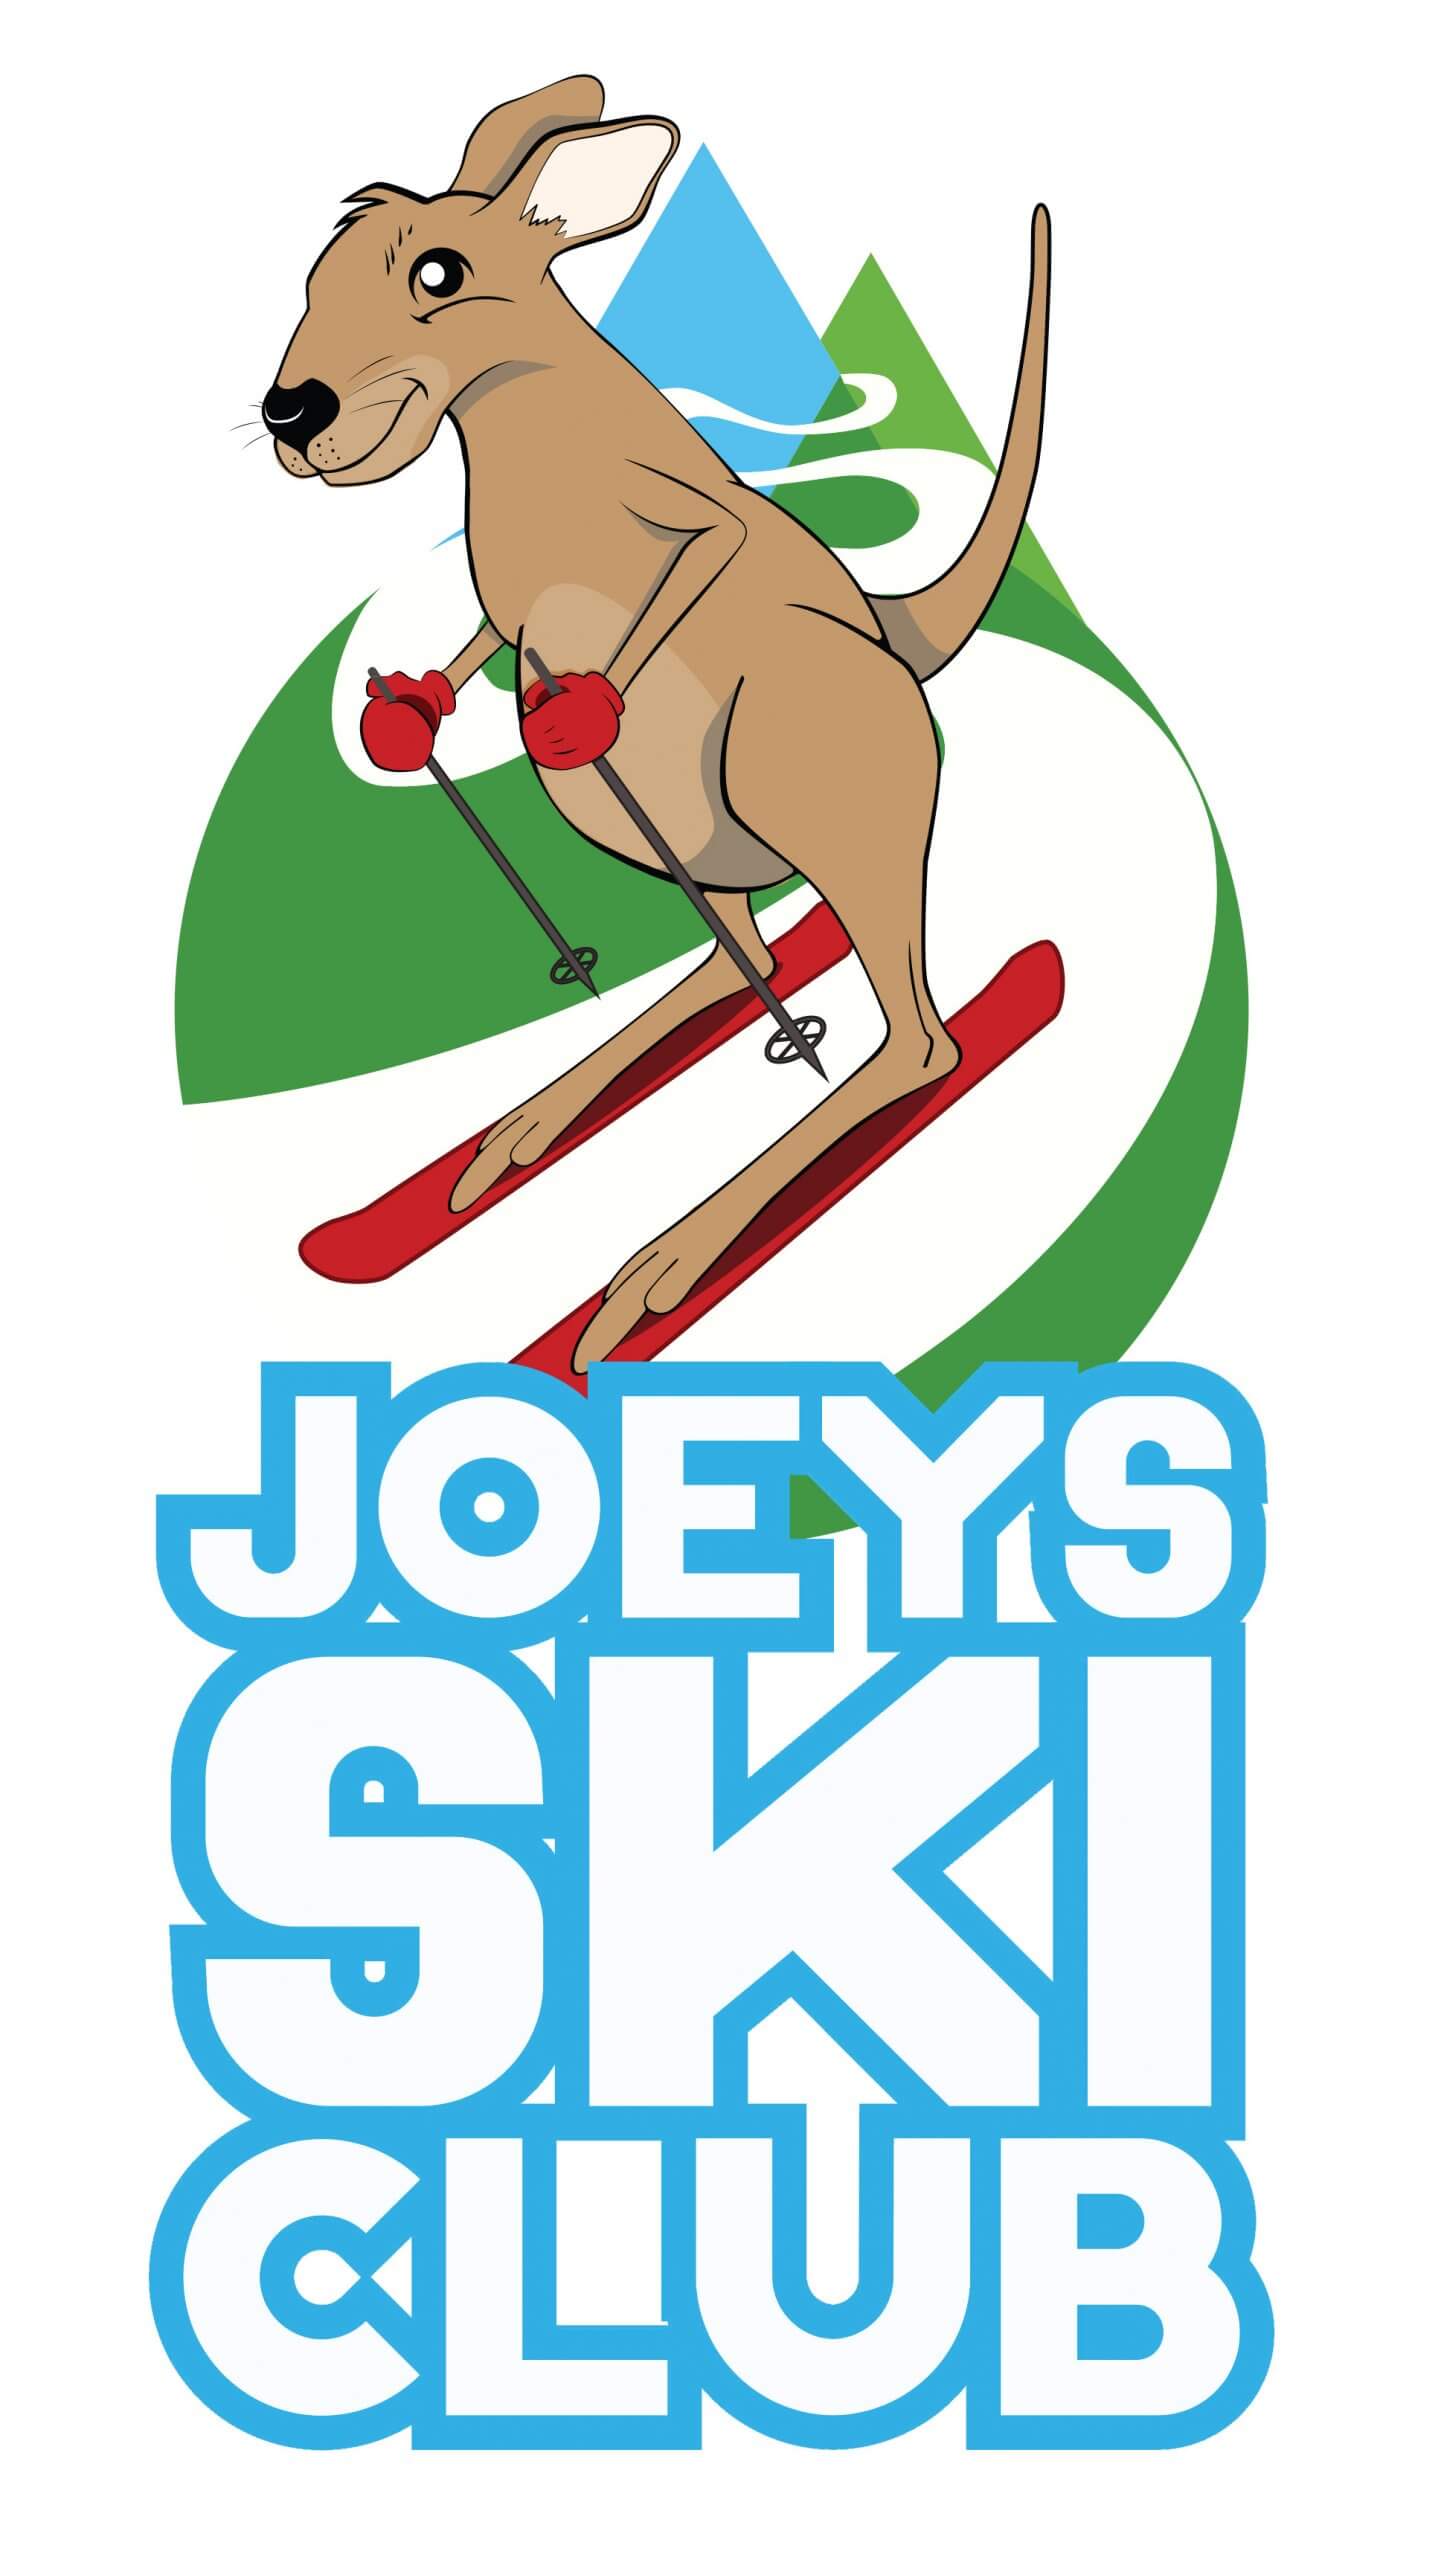 Joeys ski club on white